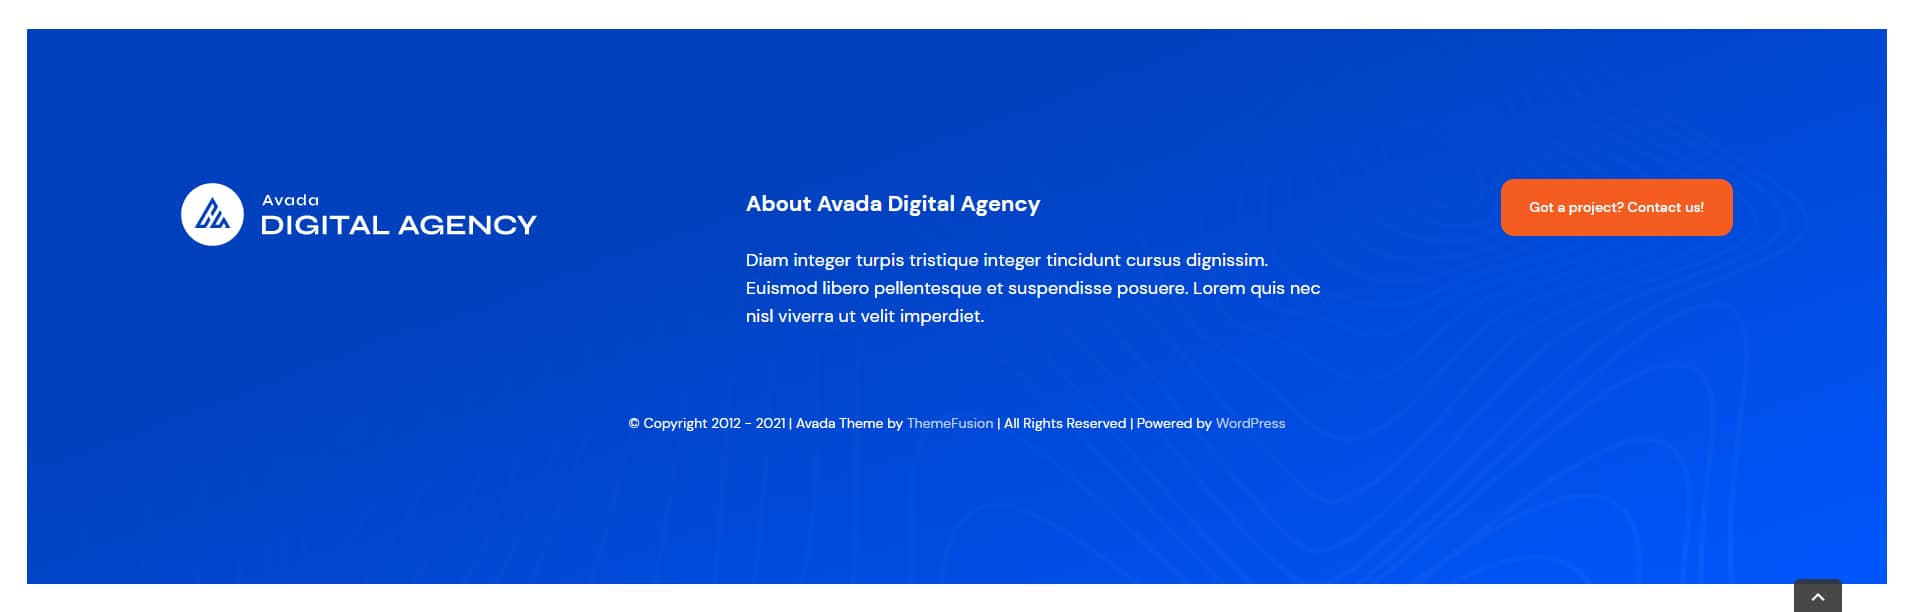 Avada Digital Agency Footer